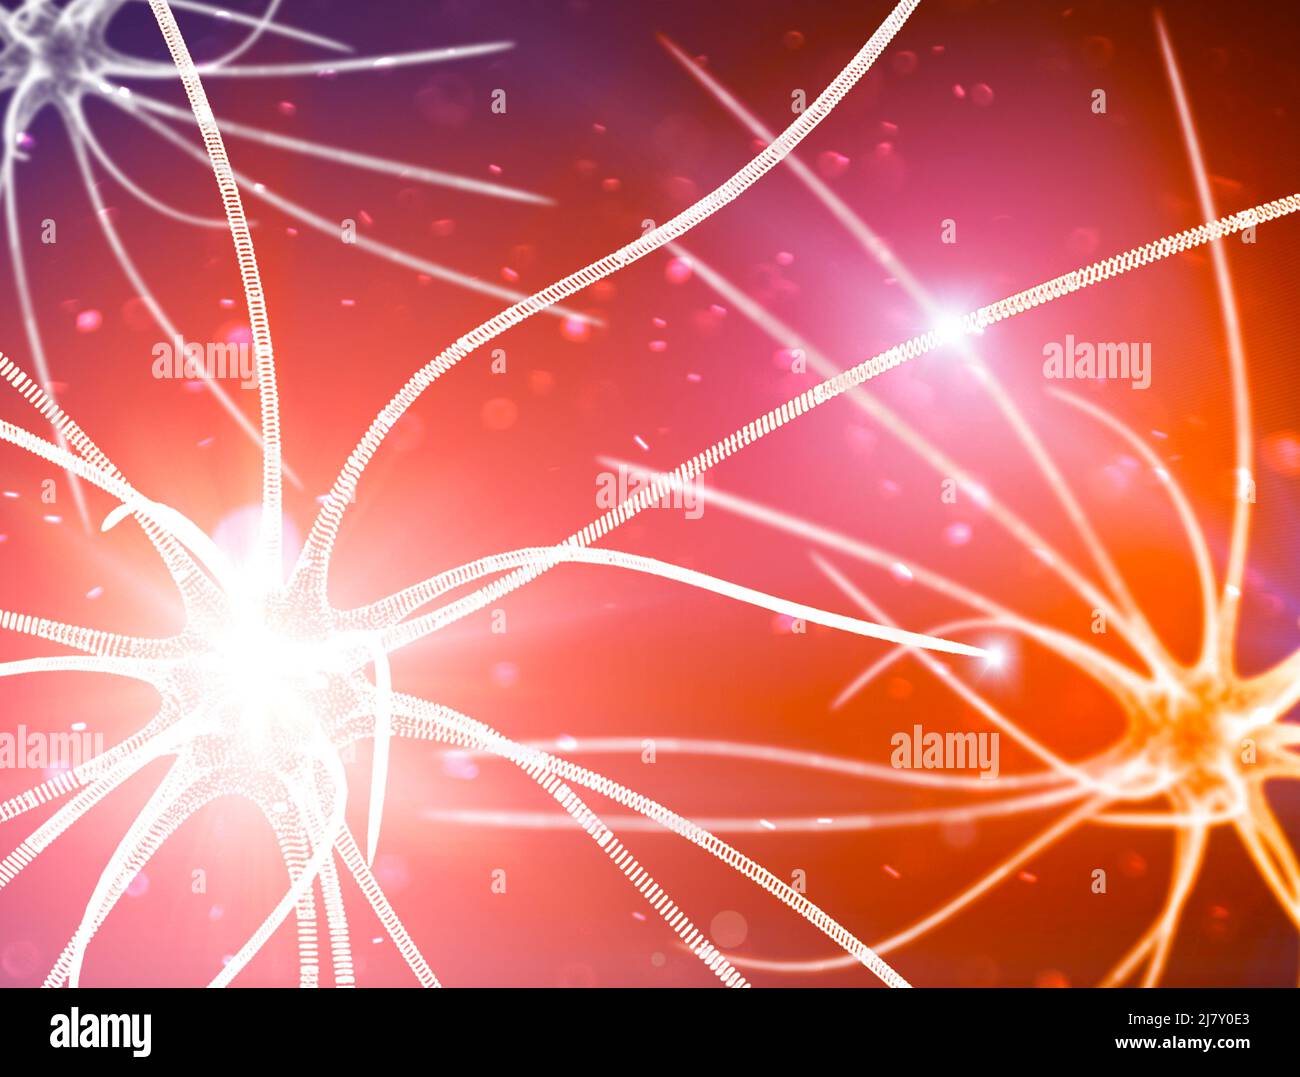 Connexions Synapse. Structure qui permet à un neurone de transmettre un signal électrique ou chimique à un autre neurone ou à la cellule efférente cible Banque D'Images